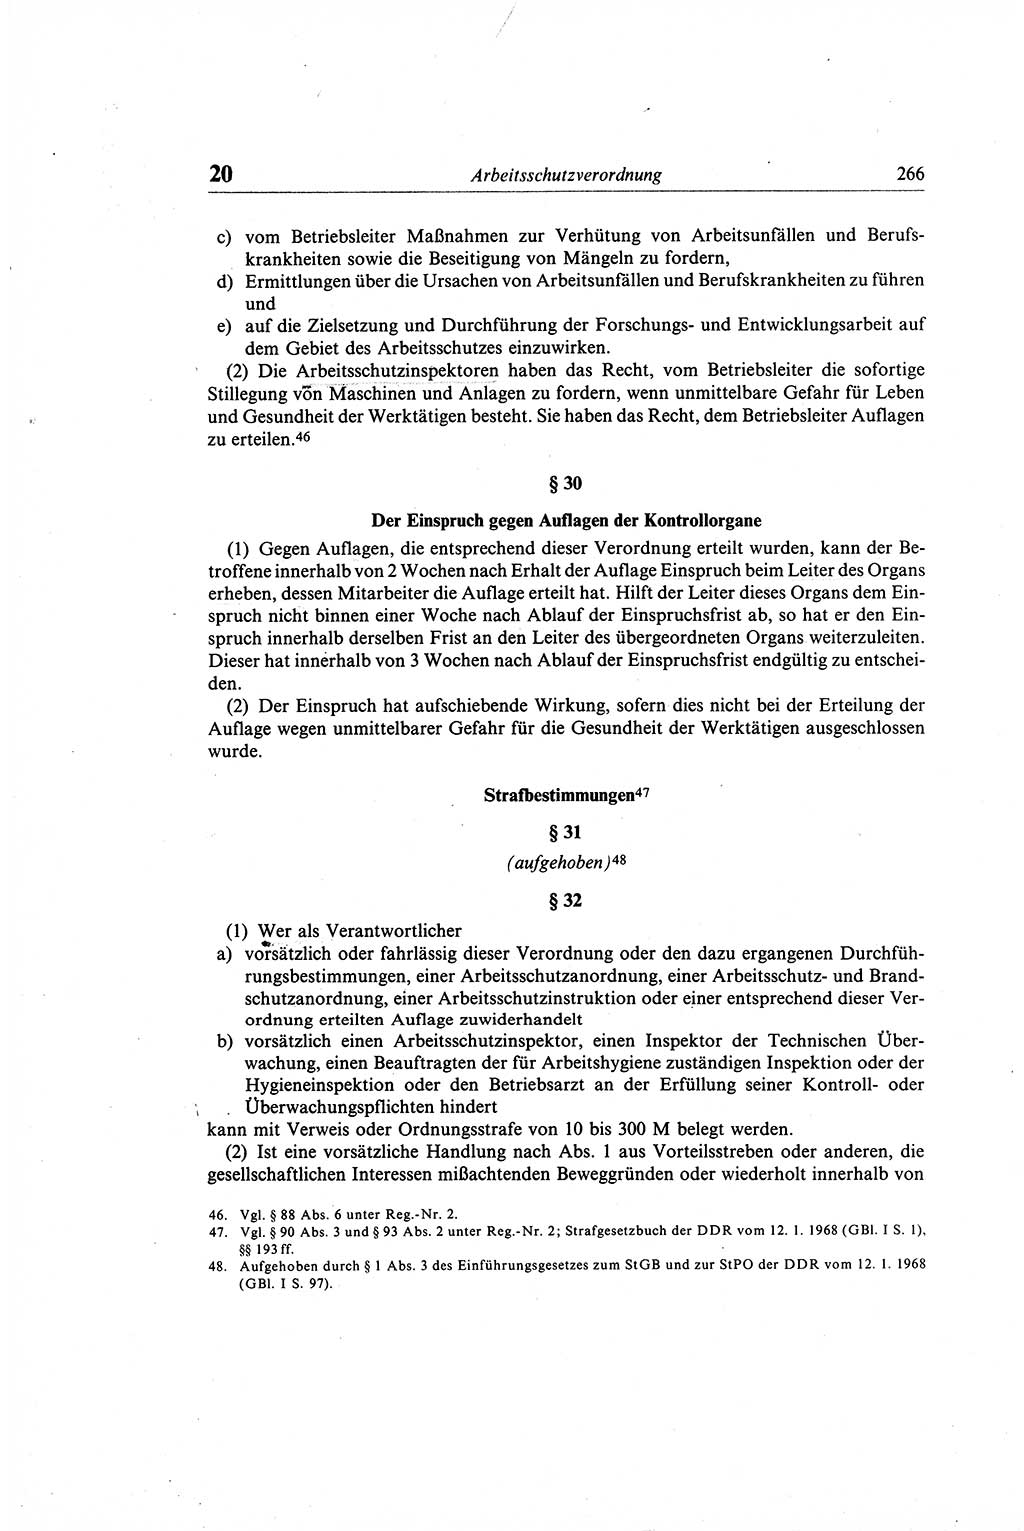 Gesetzbuch der Arbeit (GBA) und andere ausgewählte rechtliche Bestimmungen [Deutsche Demokratische Republik (DDR)] 1968, Seite 266 (GBA DDR 1968, S. 266)